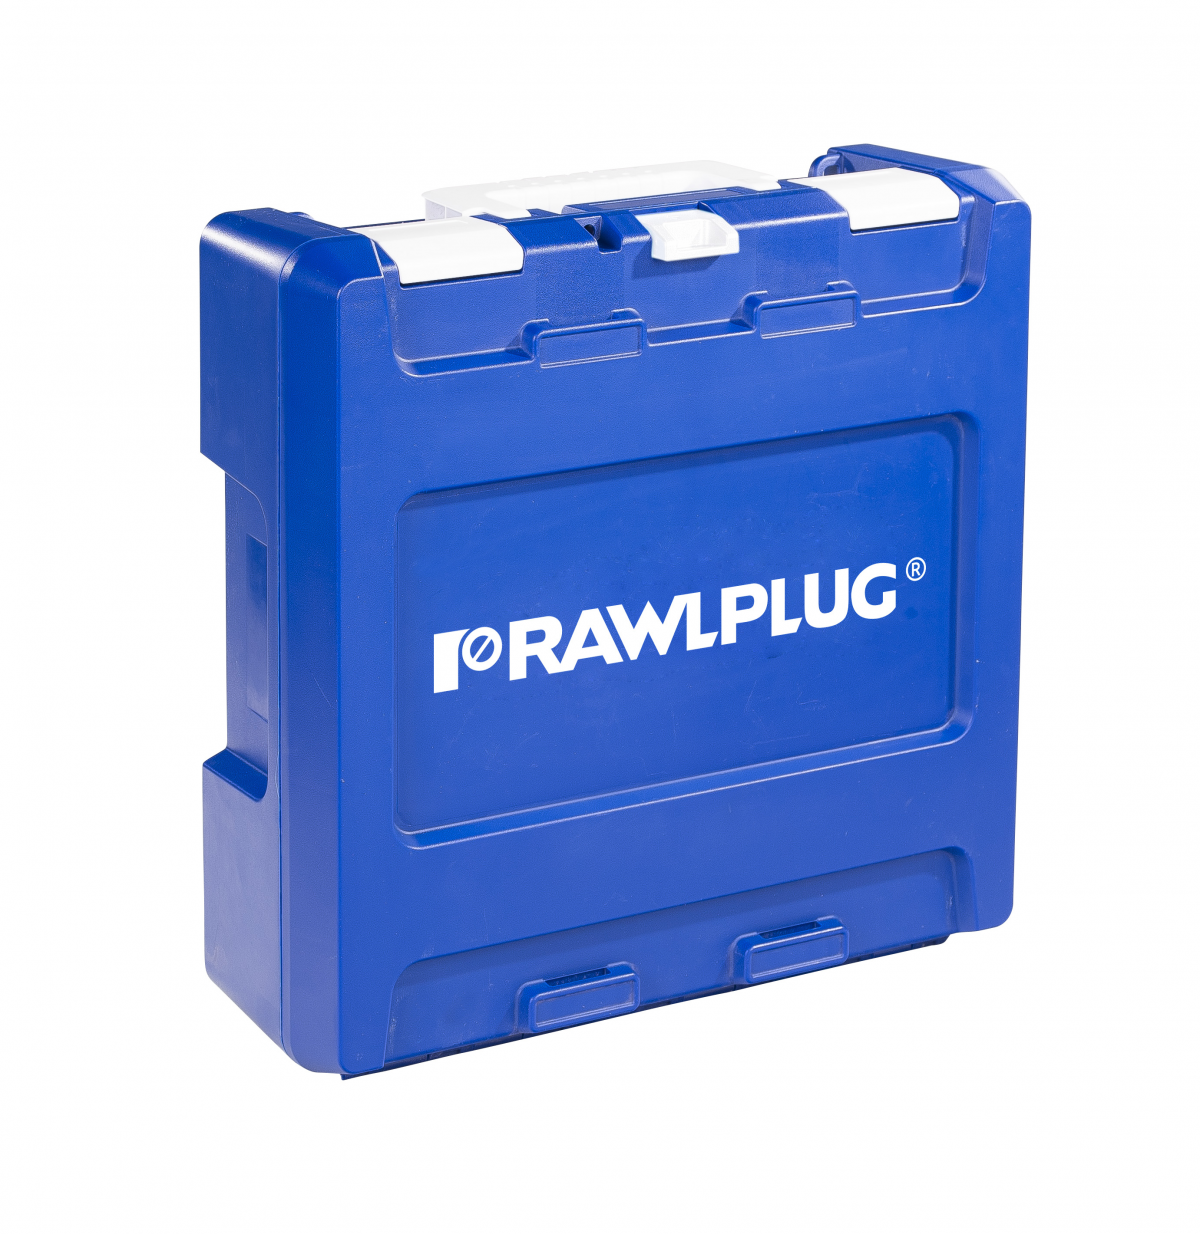 R-PRH18-S Akumulatorowa młotowiertarka RawlHammer 18V SDS plus, w walizce transportowej